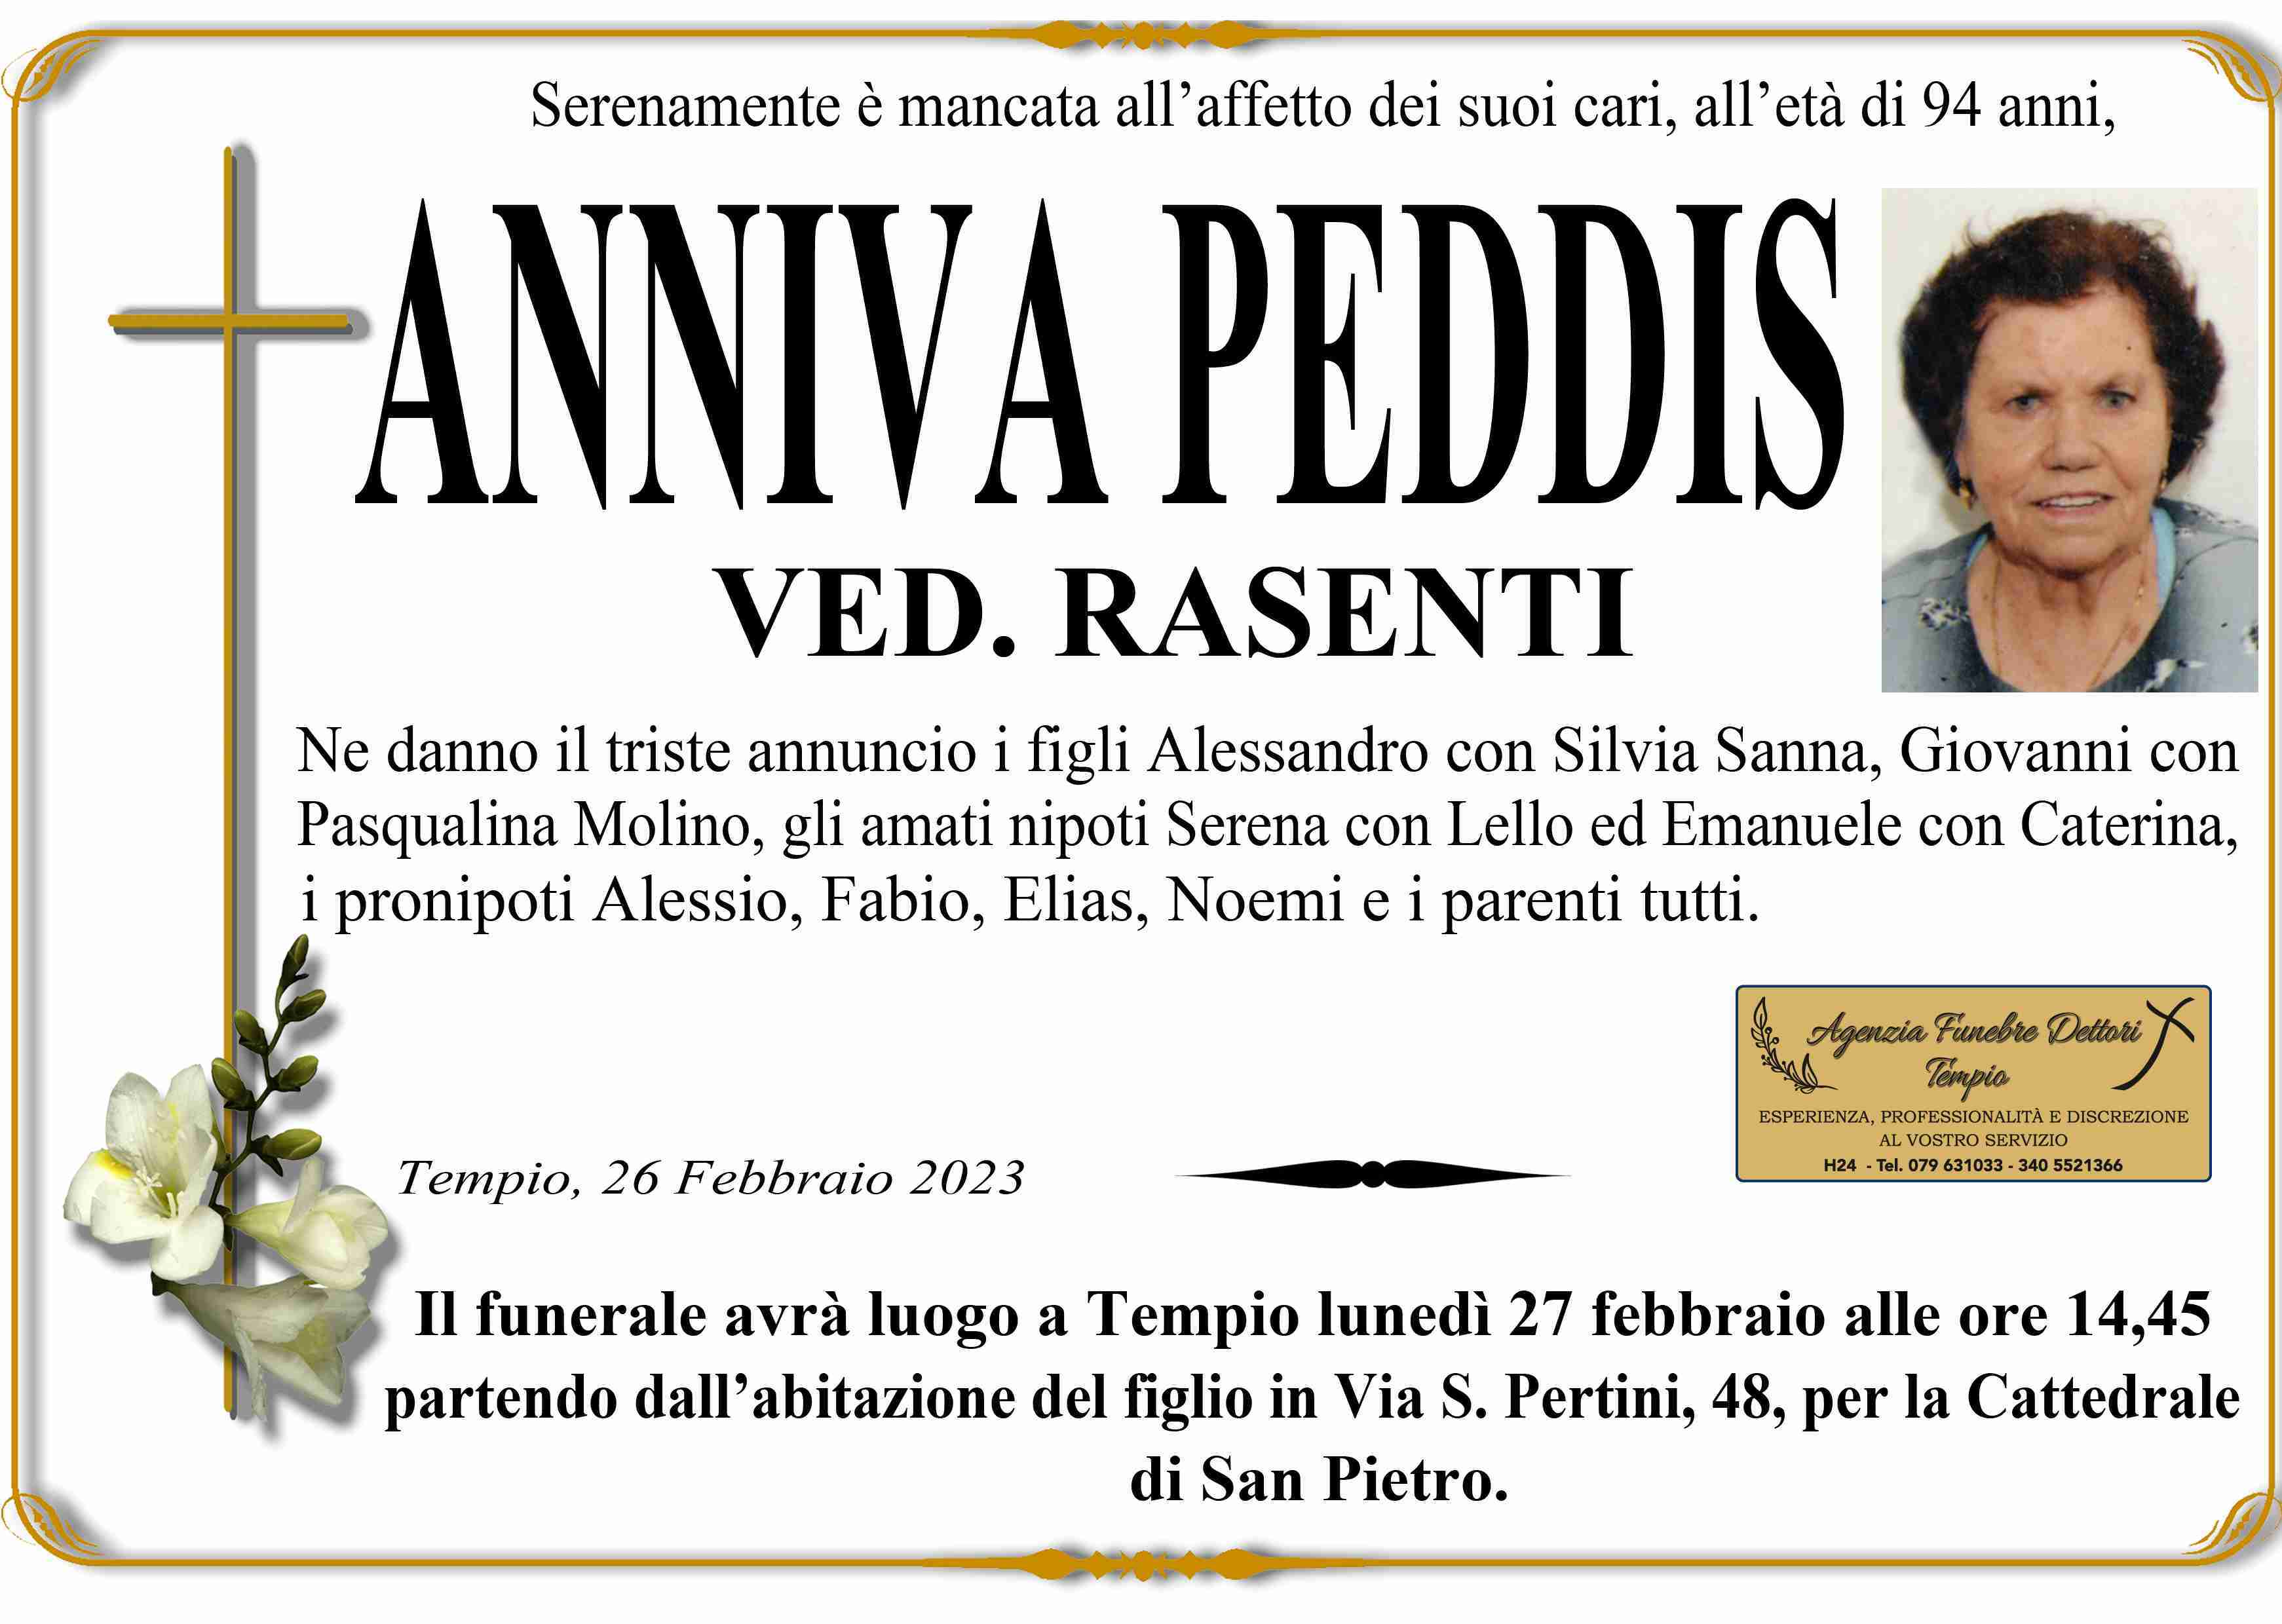 Anniva Peddis